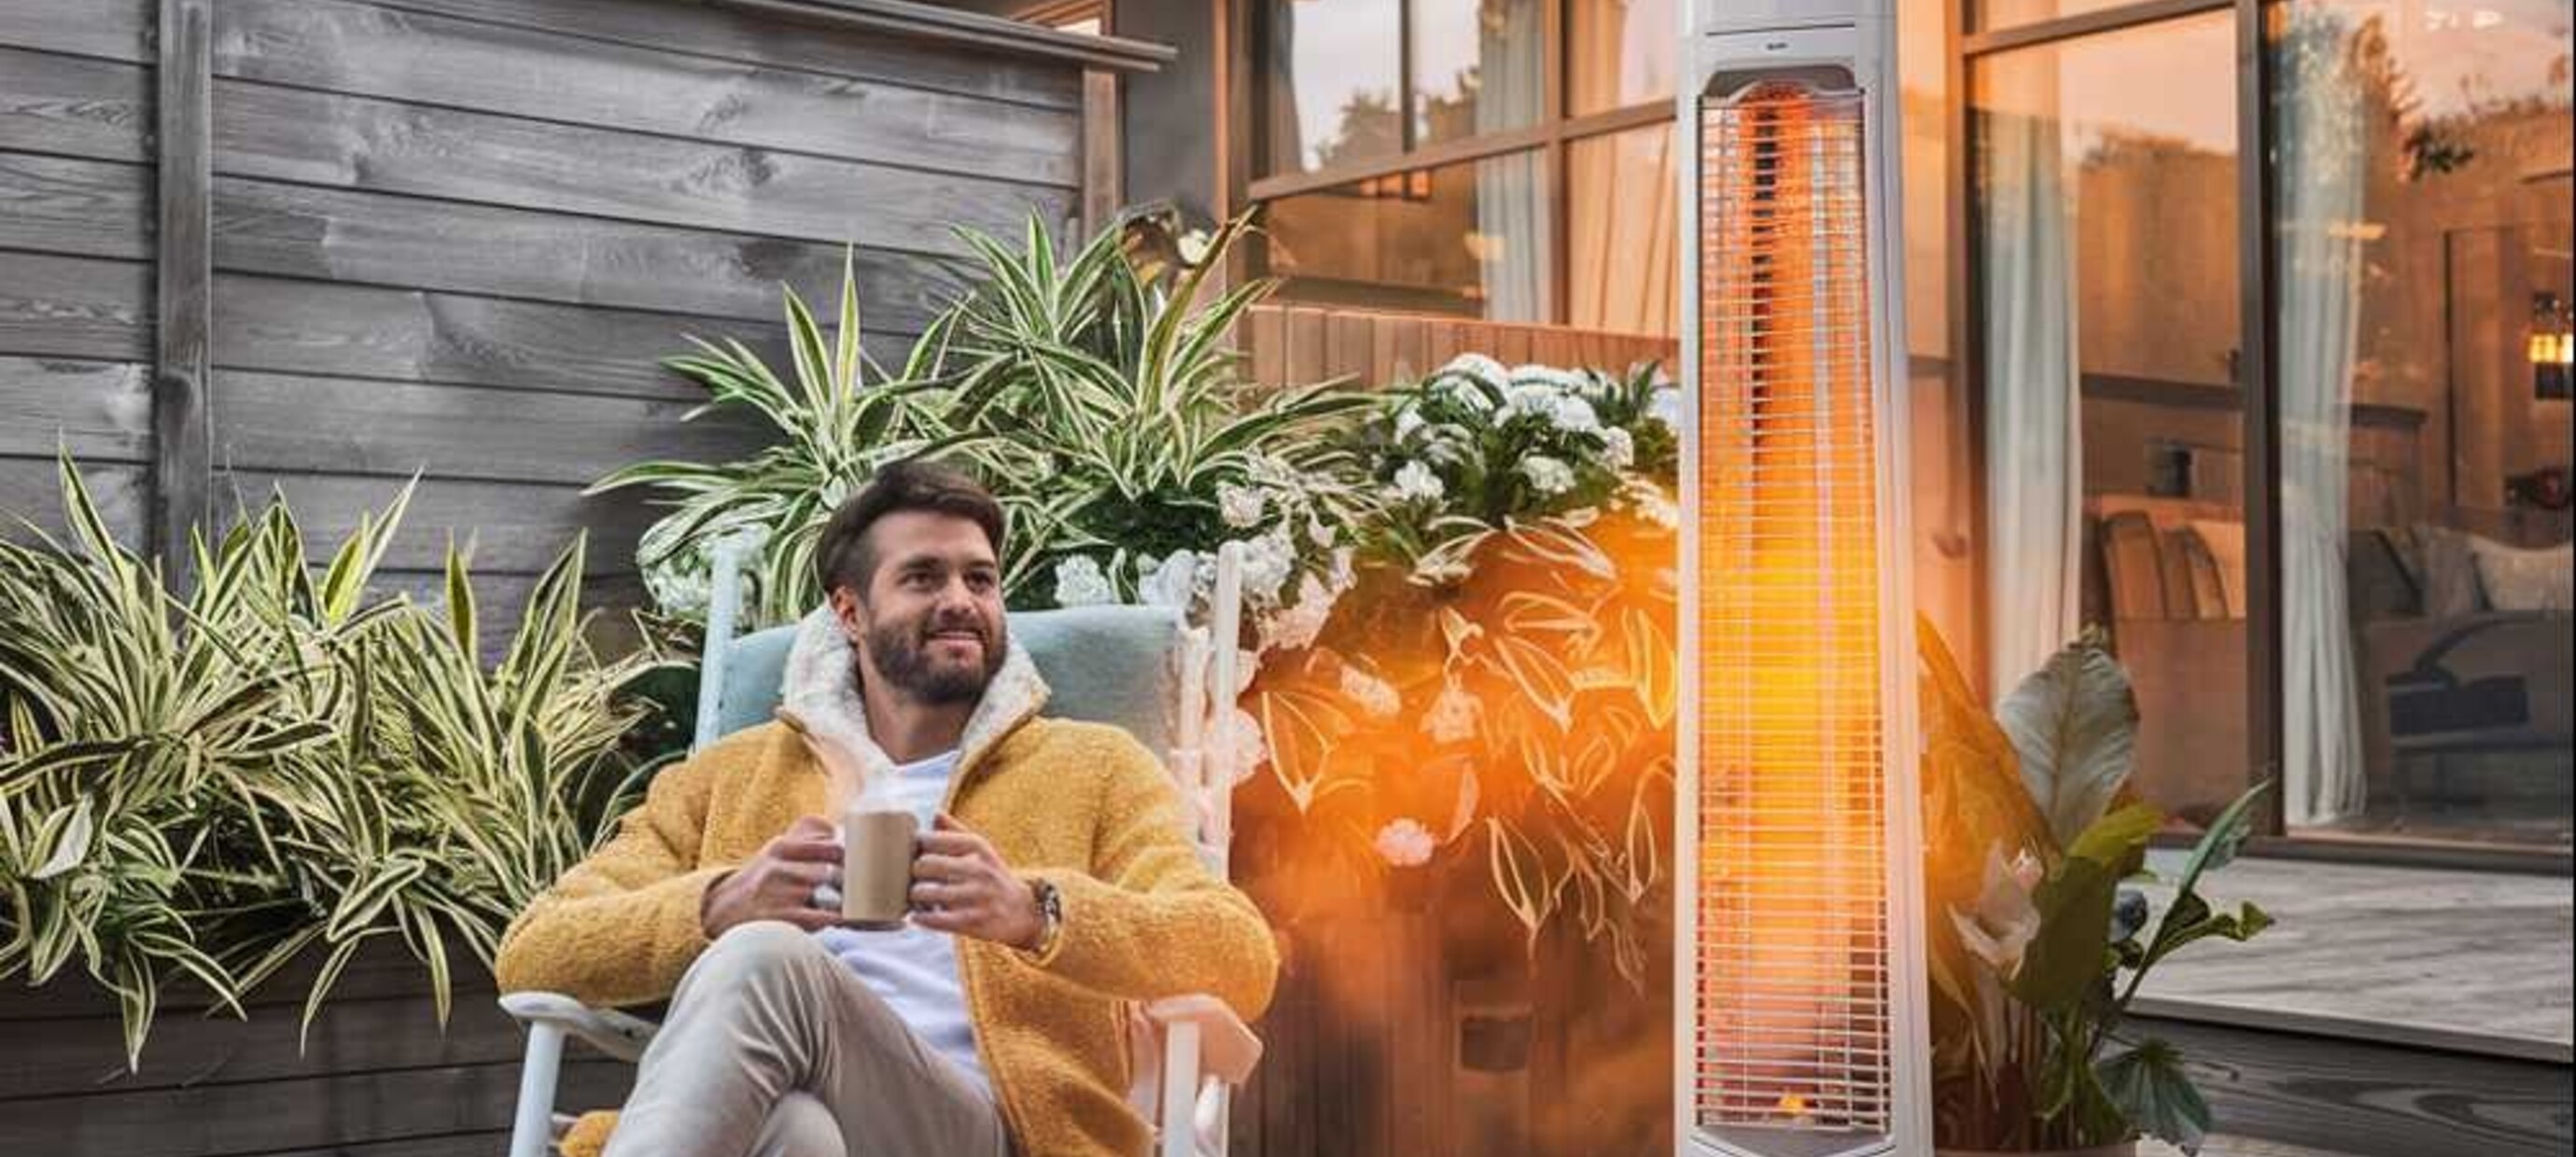 Buitenleven in de winter - Met een infrarood terrasverwarmer is het mogelijk